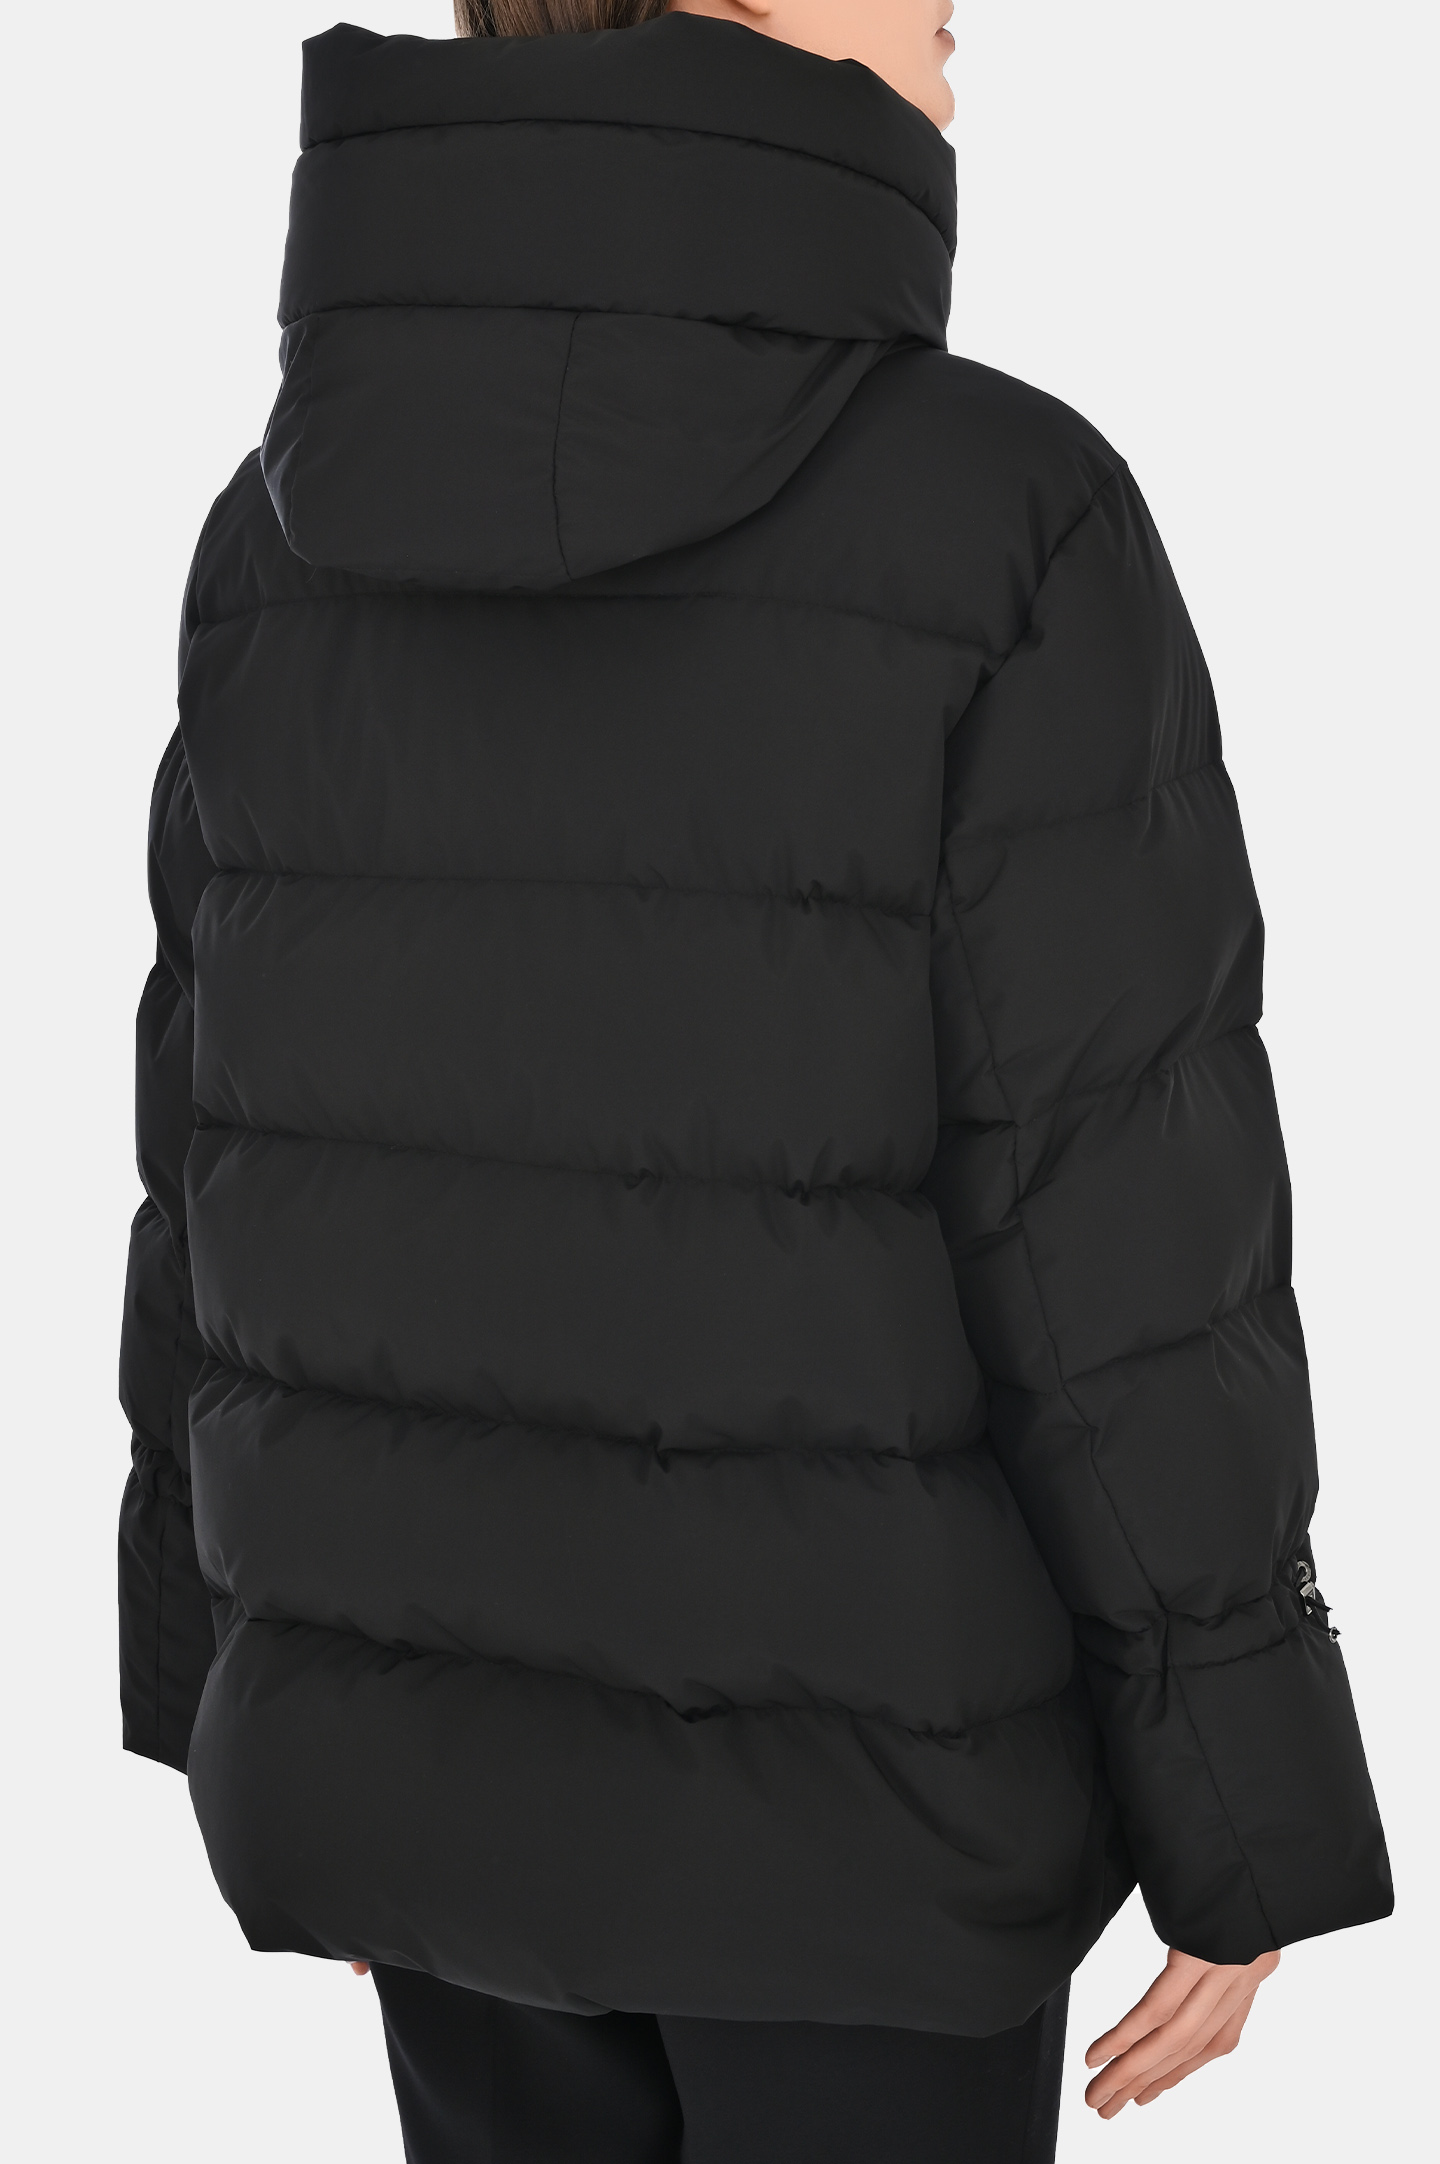 Куртка MOORER MODPI200001-TEPA023, цвет: Черный, Женский